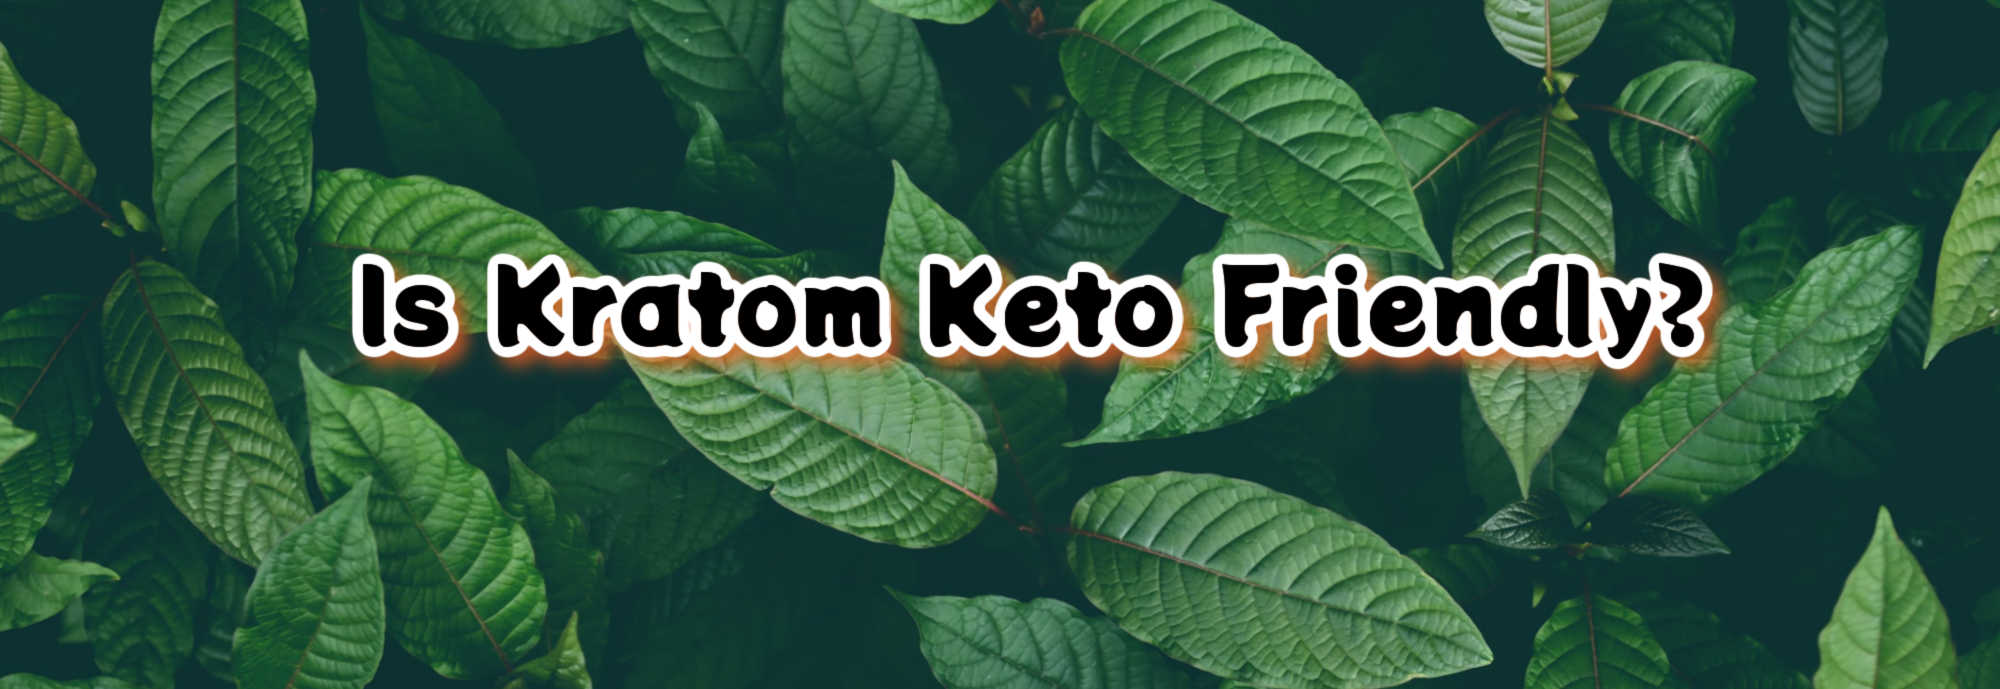 Kratom and Keto: Is Kratom Keto Friendly?